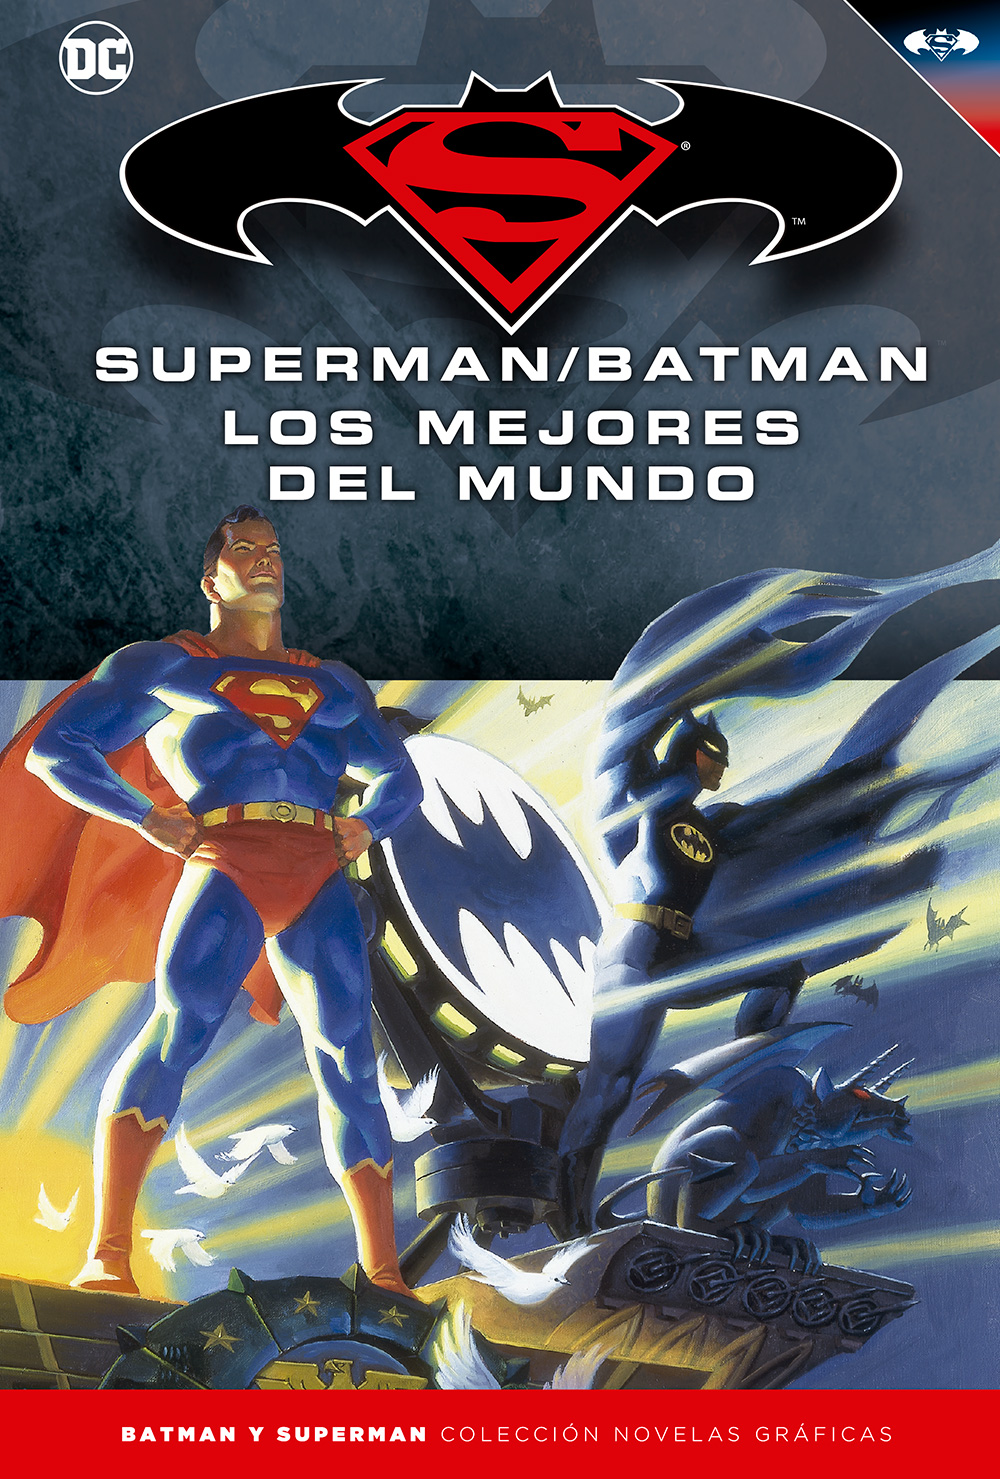 17 - [DC - Salvat] Batman y Superman: Colección Novelas Gráficas - Página 7 Portada_BMSM_16_LosMejoresdelMundo